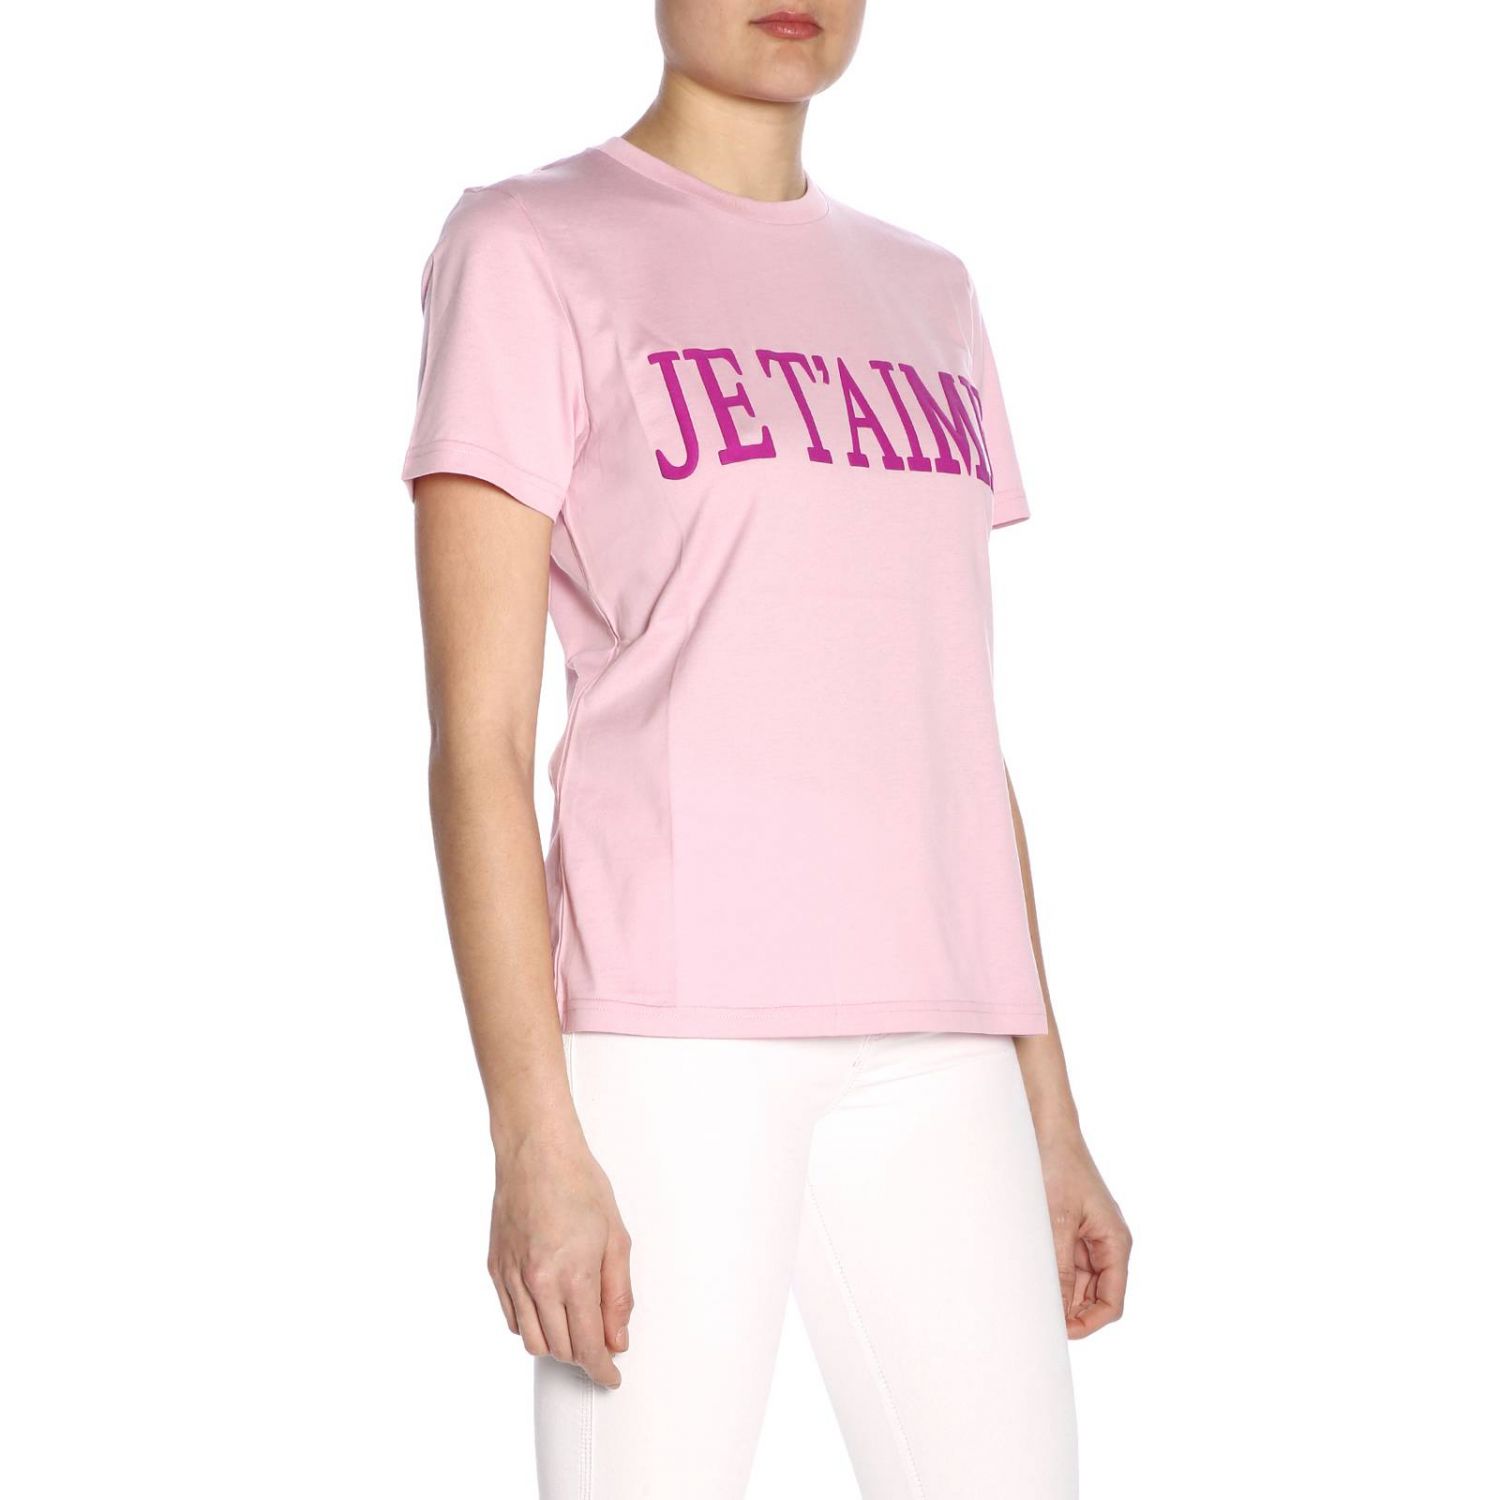 Alberta Ferretti Outlet: T-shirt women | T-Shirt Alberta Ferretti Women ...